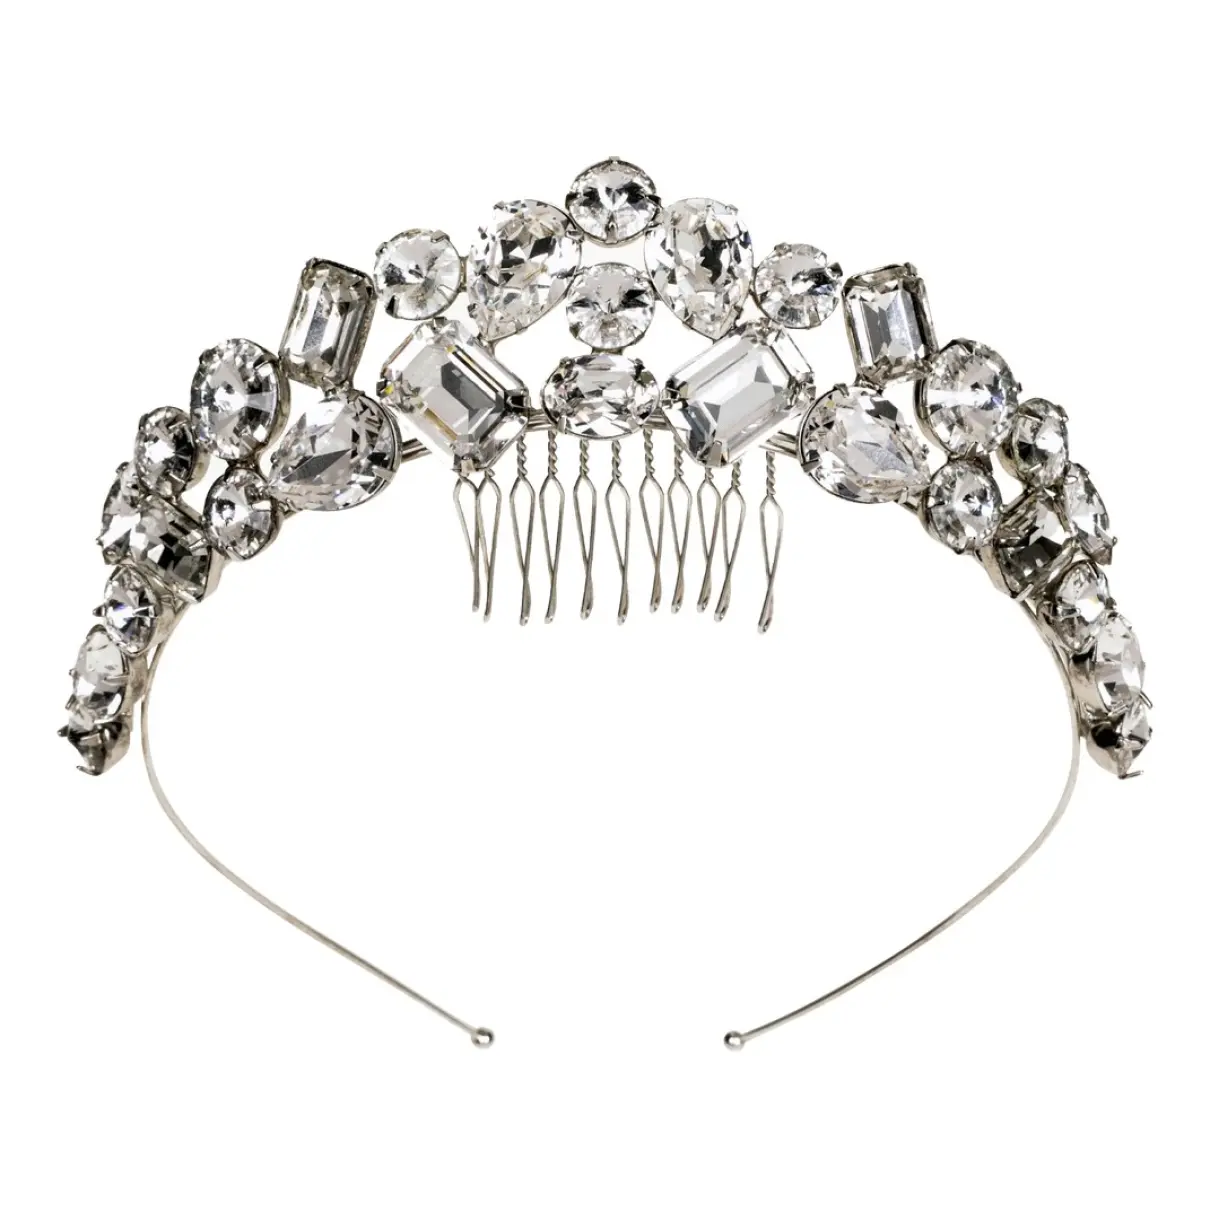 Crystal hair accessory Jennifer Behr